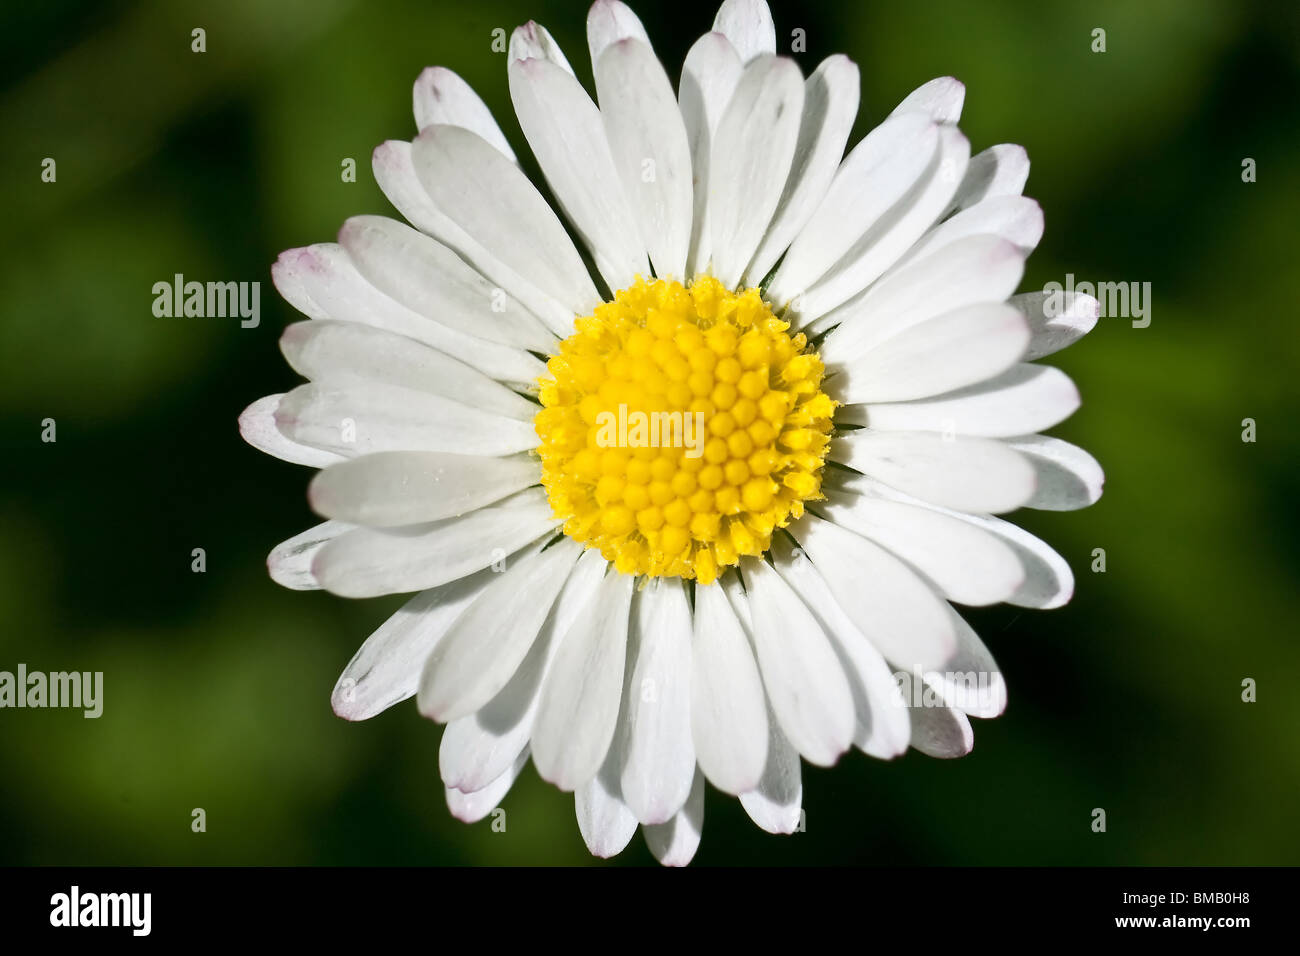 Daisy, hermosa extreme closeup, macro fotografía, la belleza de la naturaleza Foto de stock